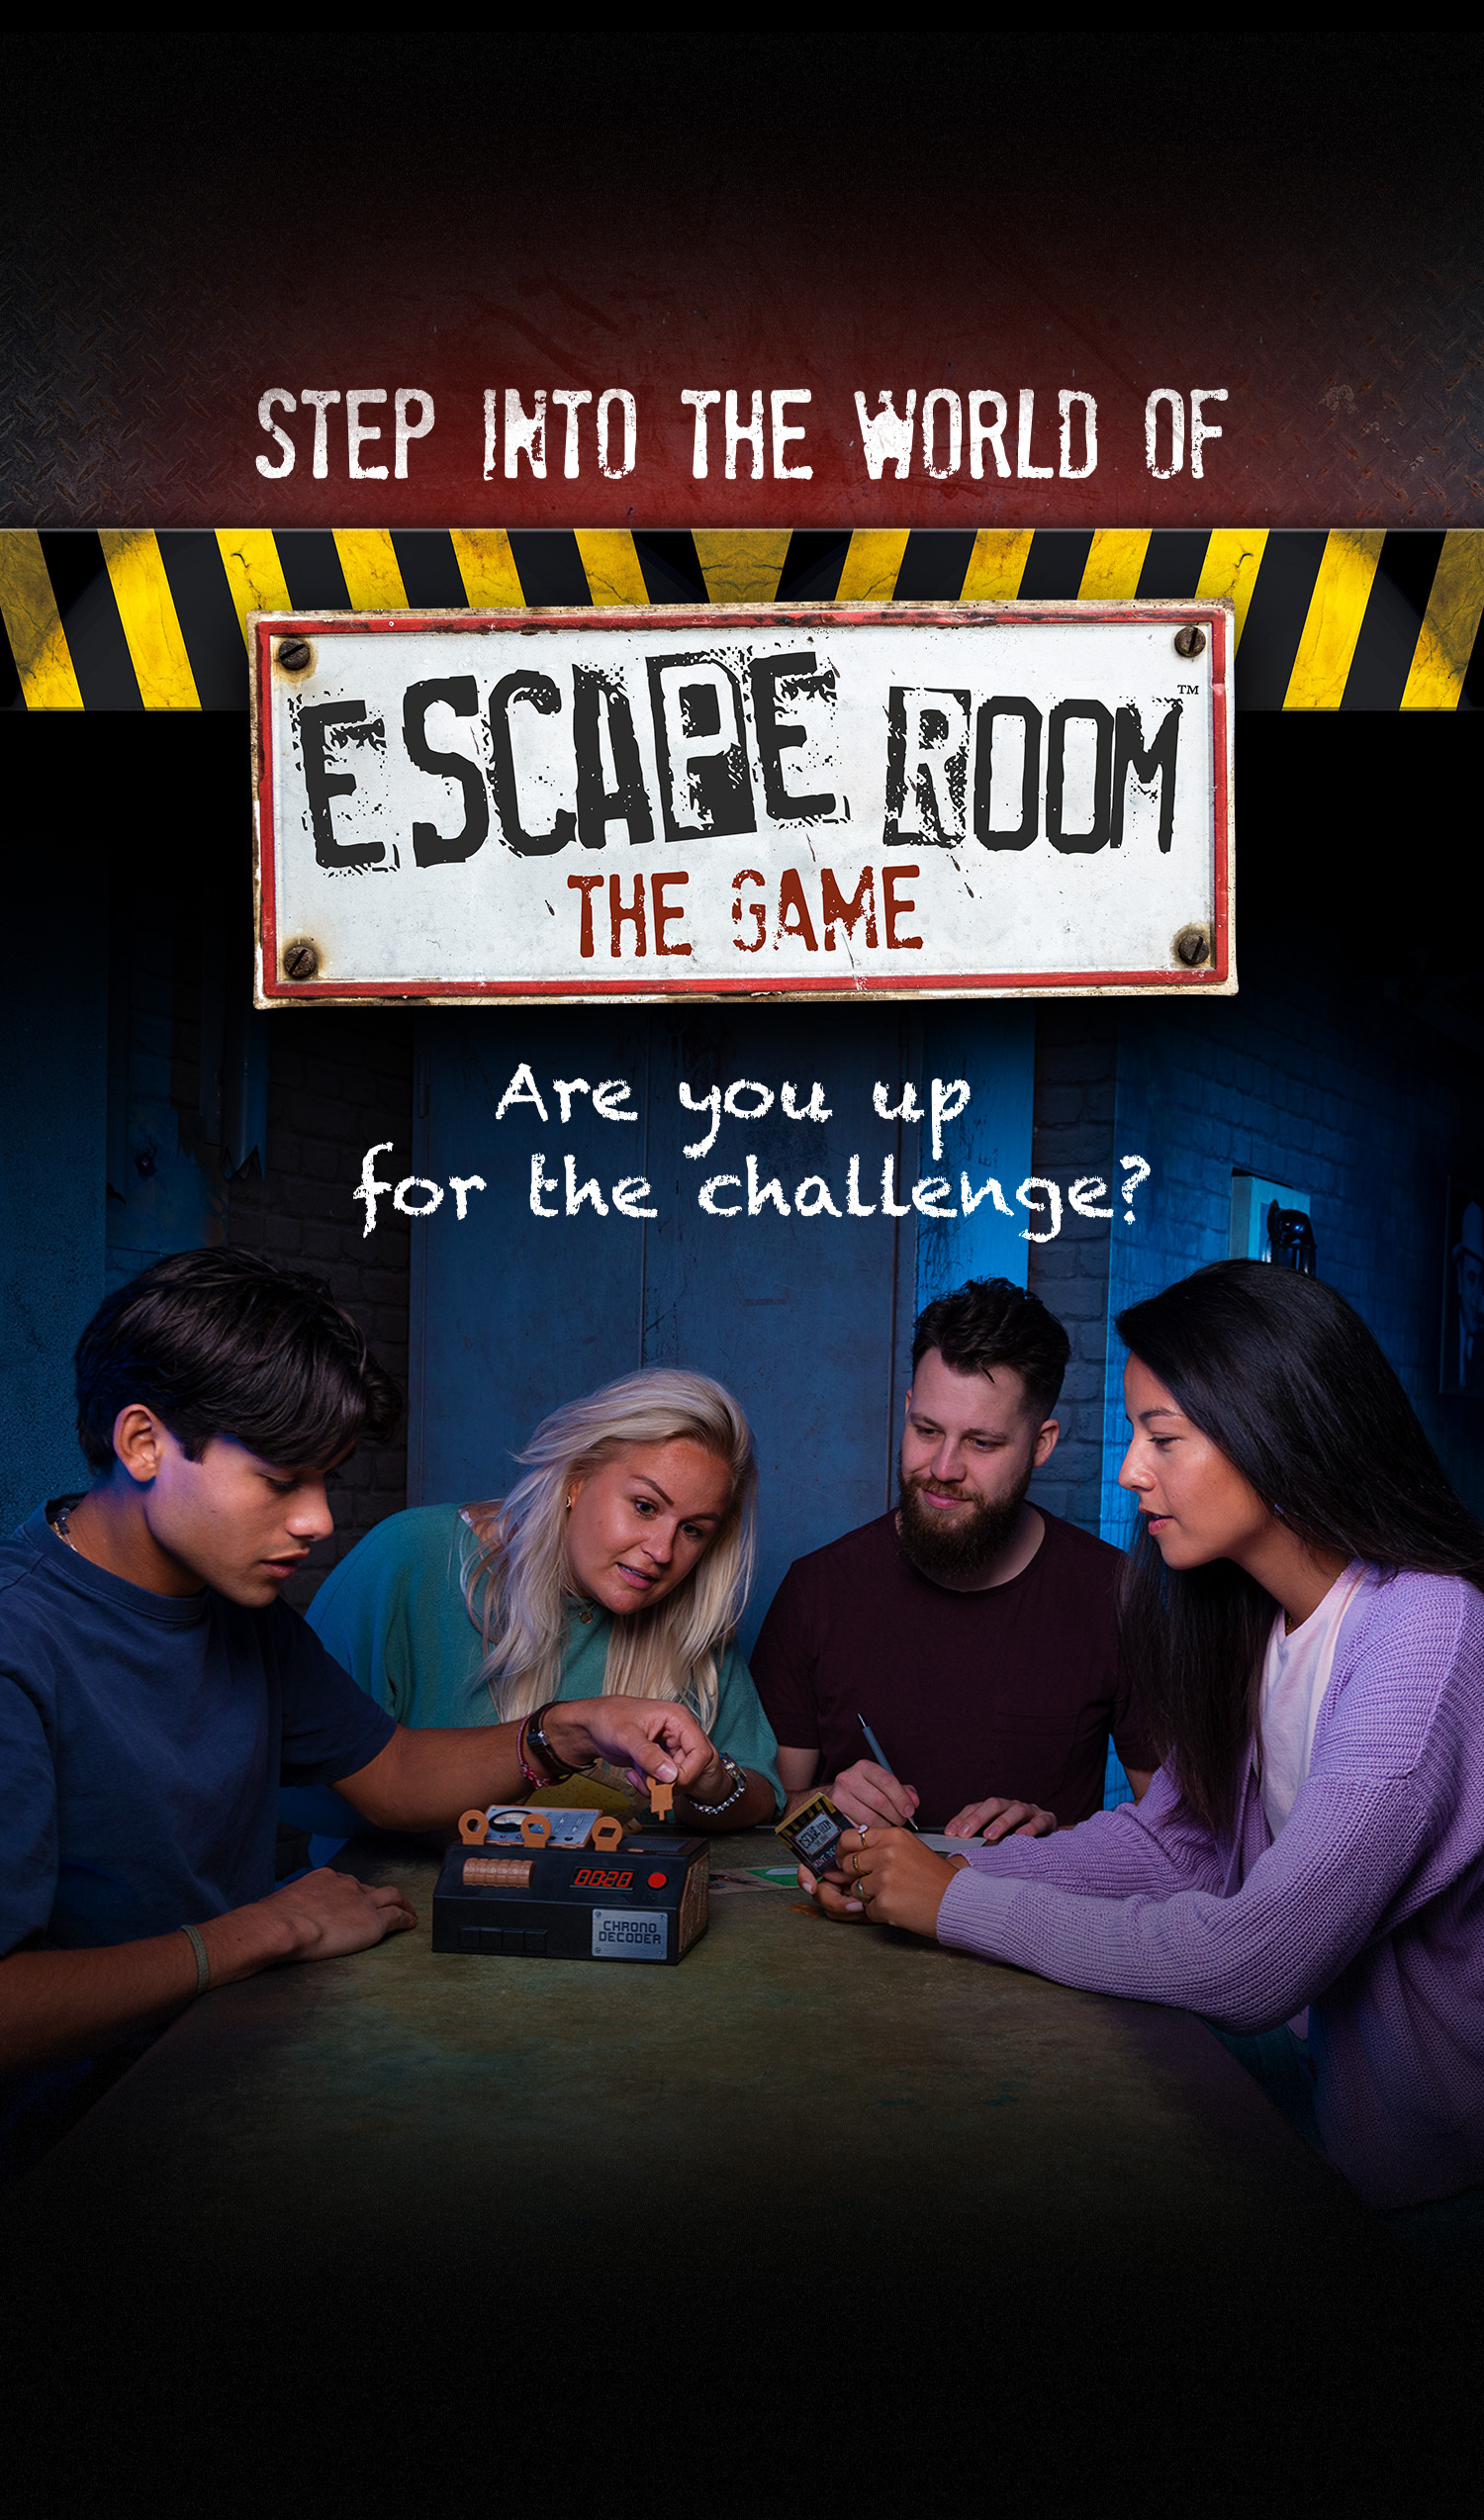 Escape Room The Game, Versão 2 - com 4 Salas de Fuga Emocionantes Resolva o  jogo de tabuleiro misterioso para adultos e adolescentes